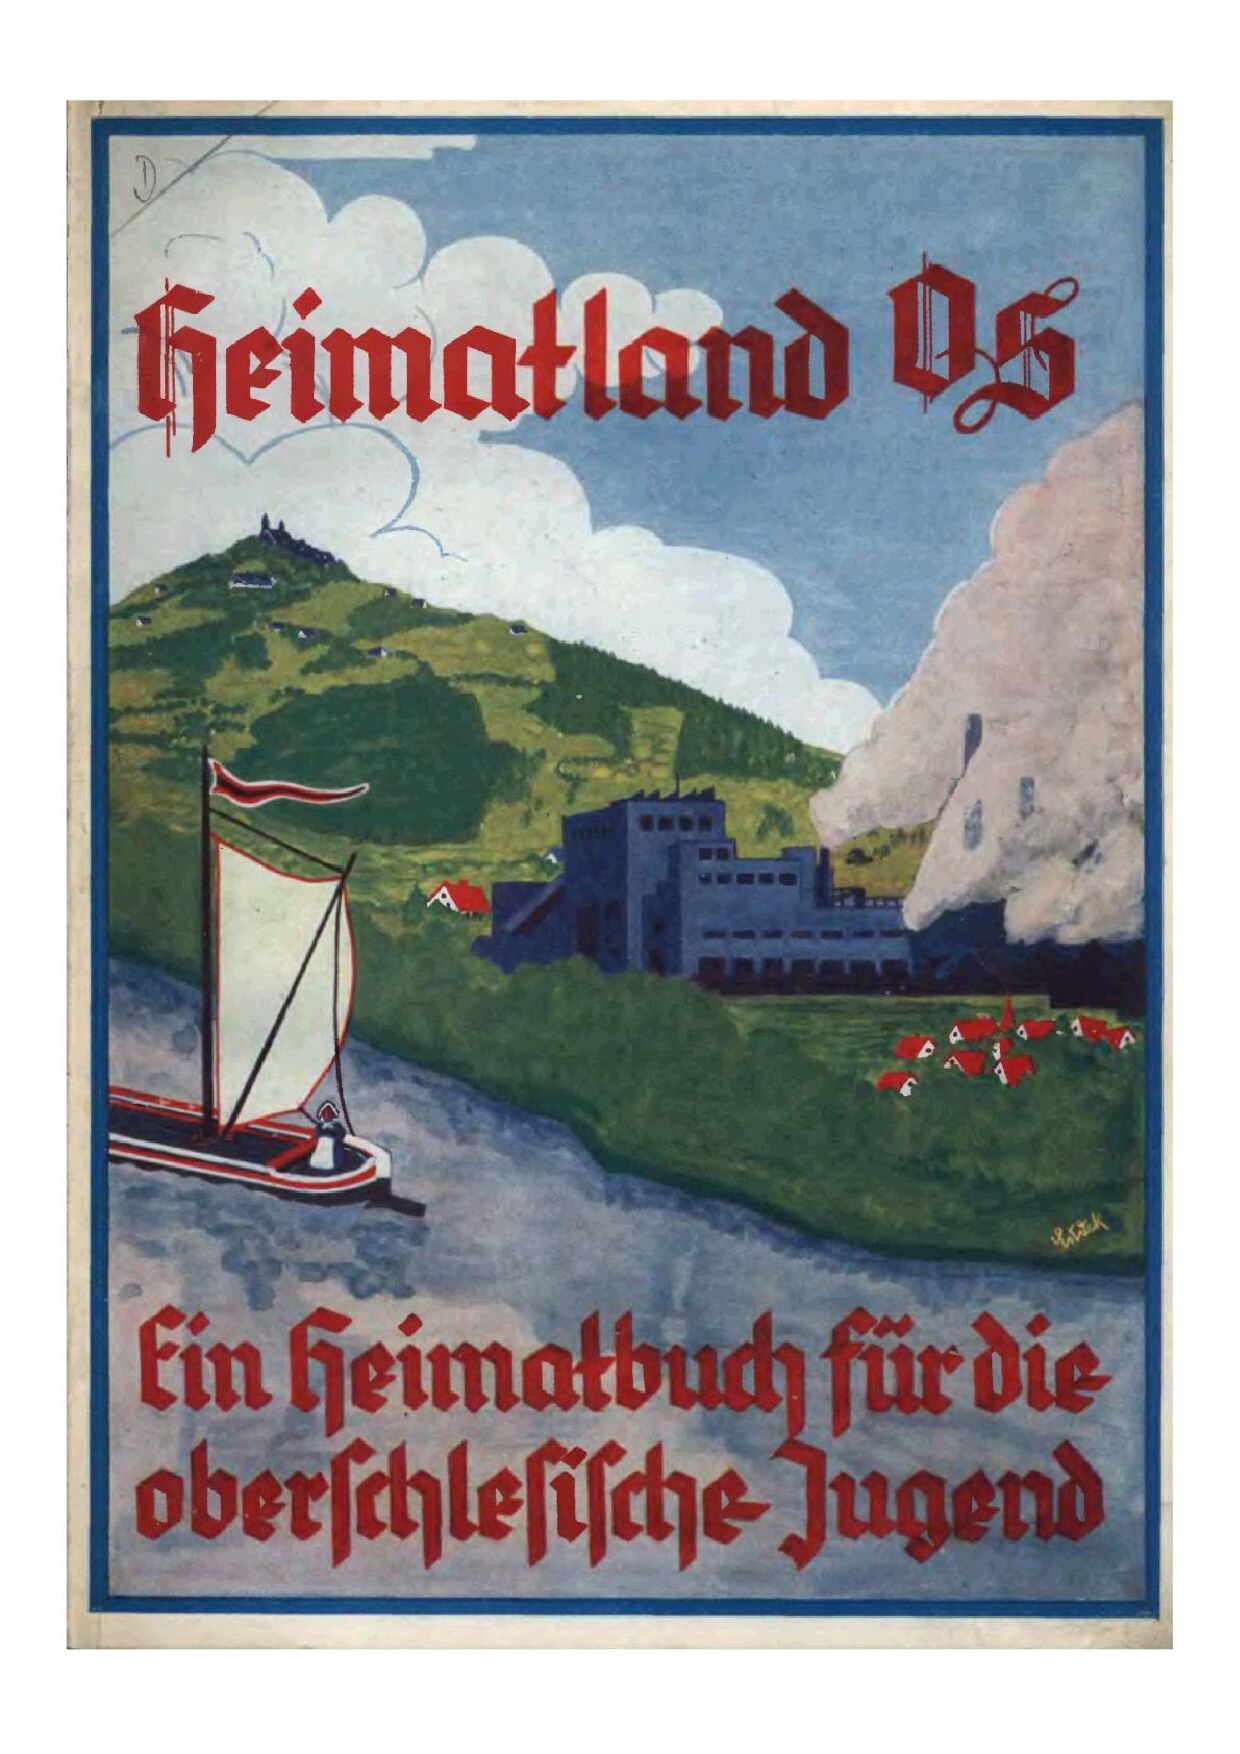 Heimatland OS - Ein Heimatbuch für die oberschlesische Jugend (1937, 122 S., Scan, Fraktur)